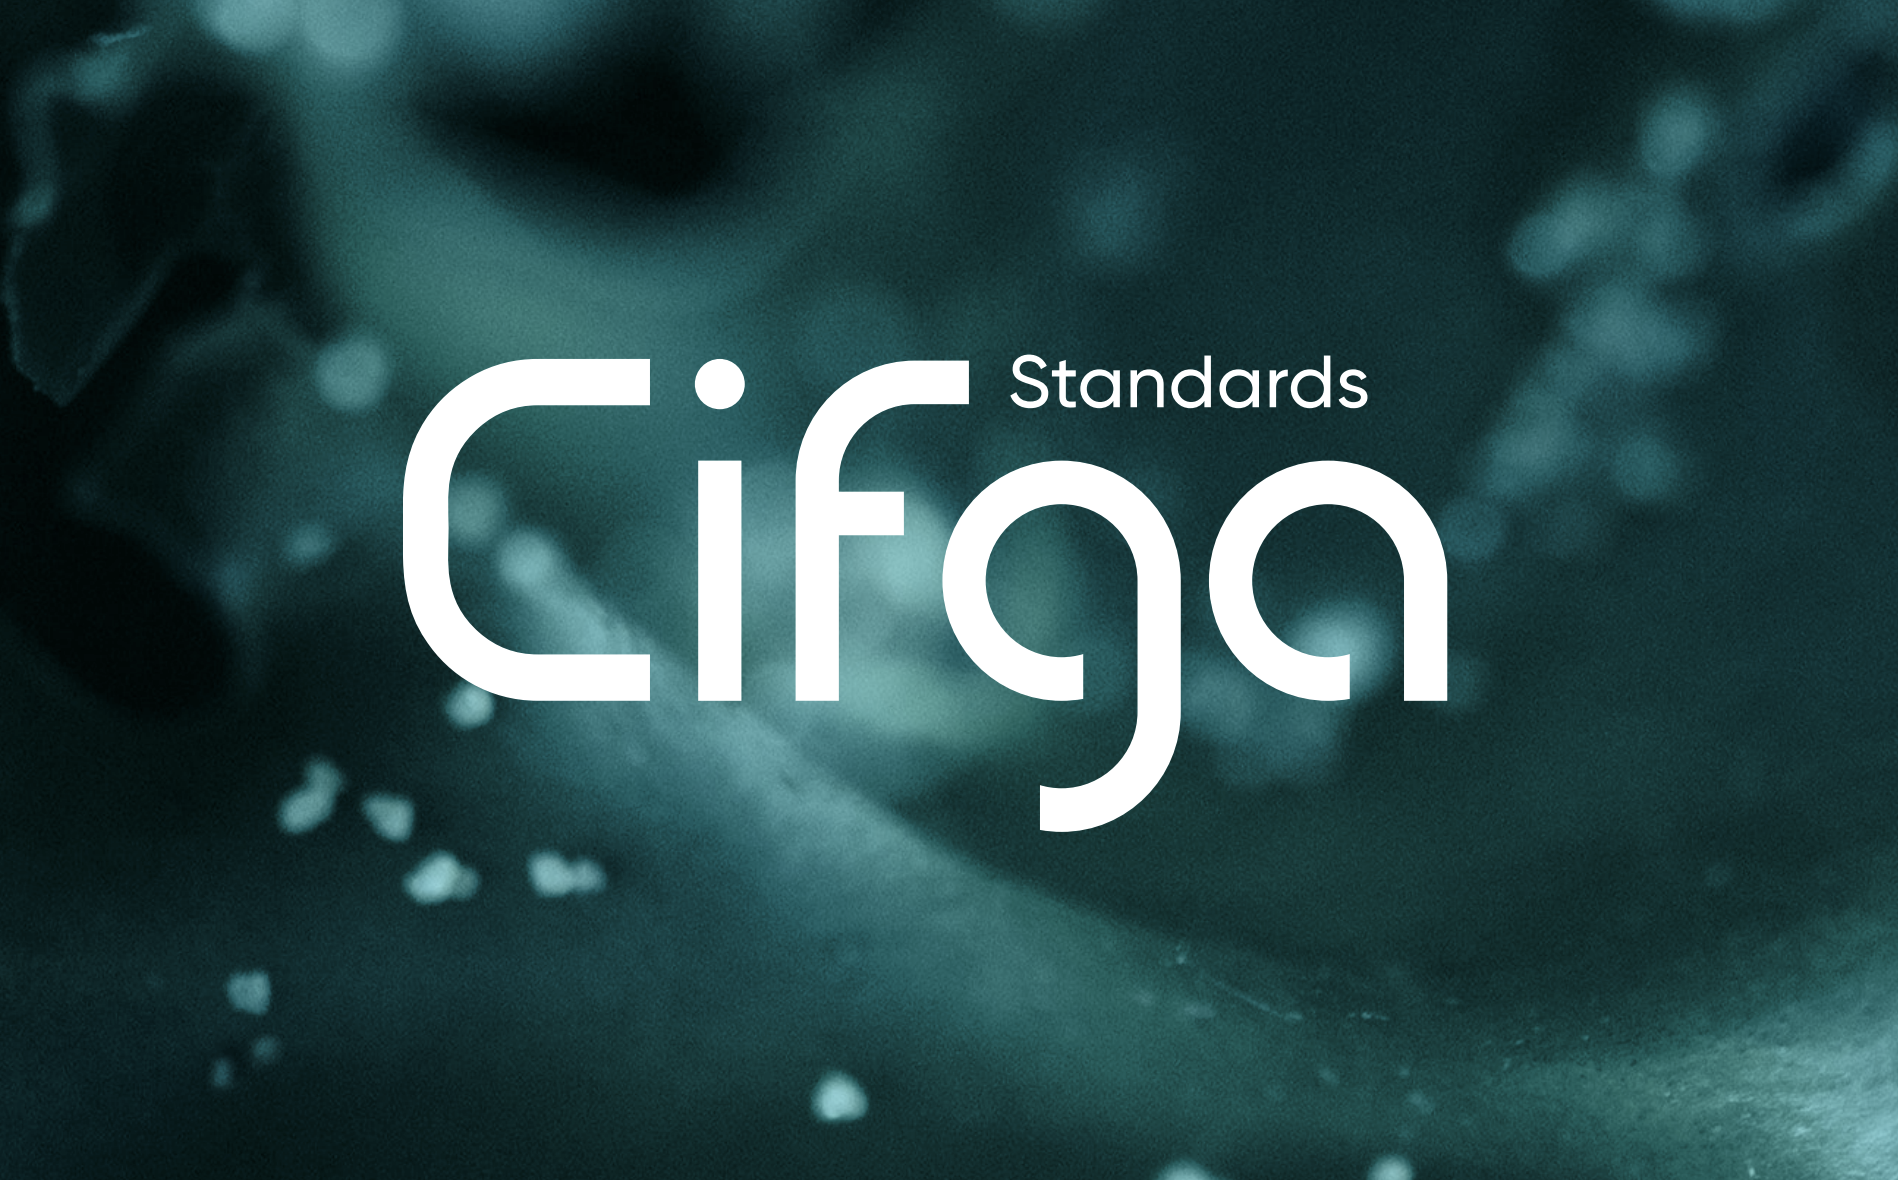 Cifga Standars logo